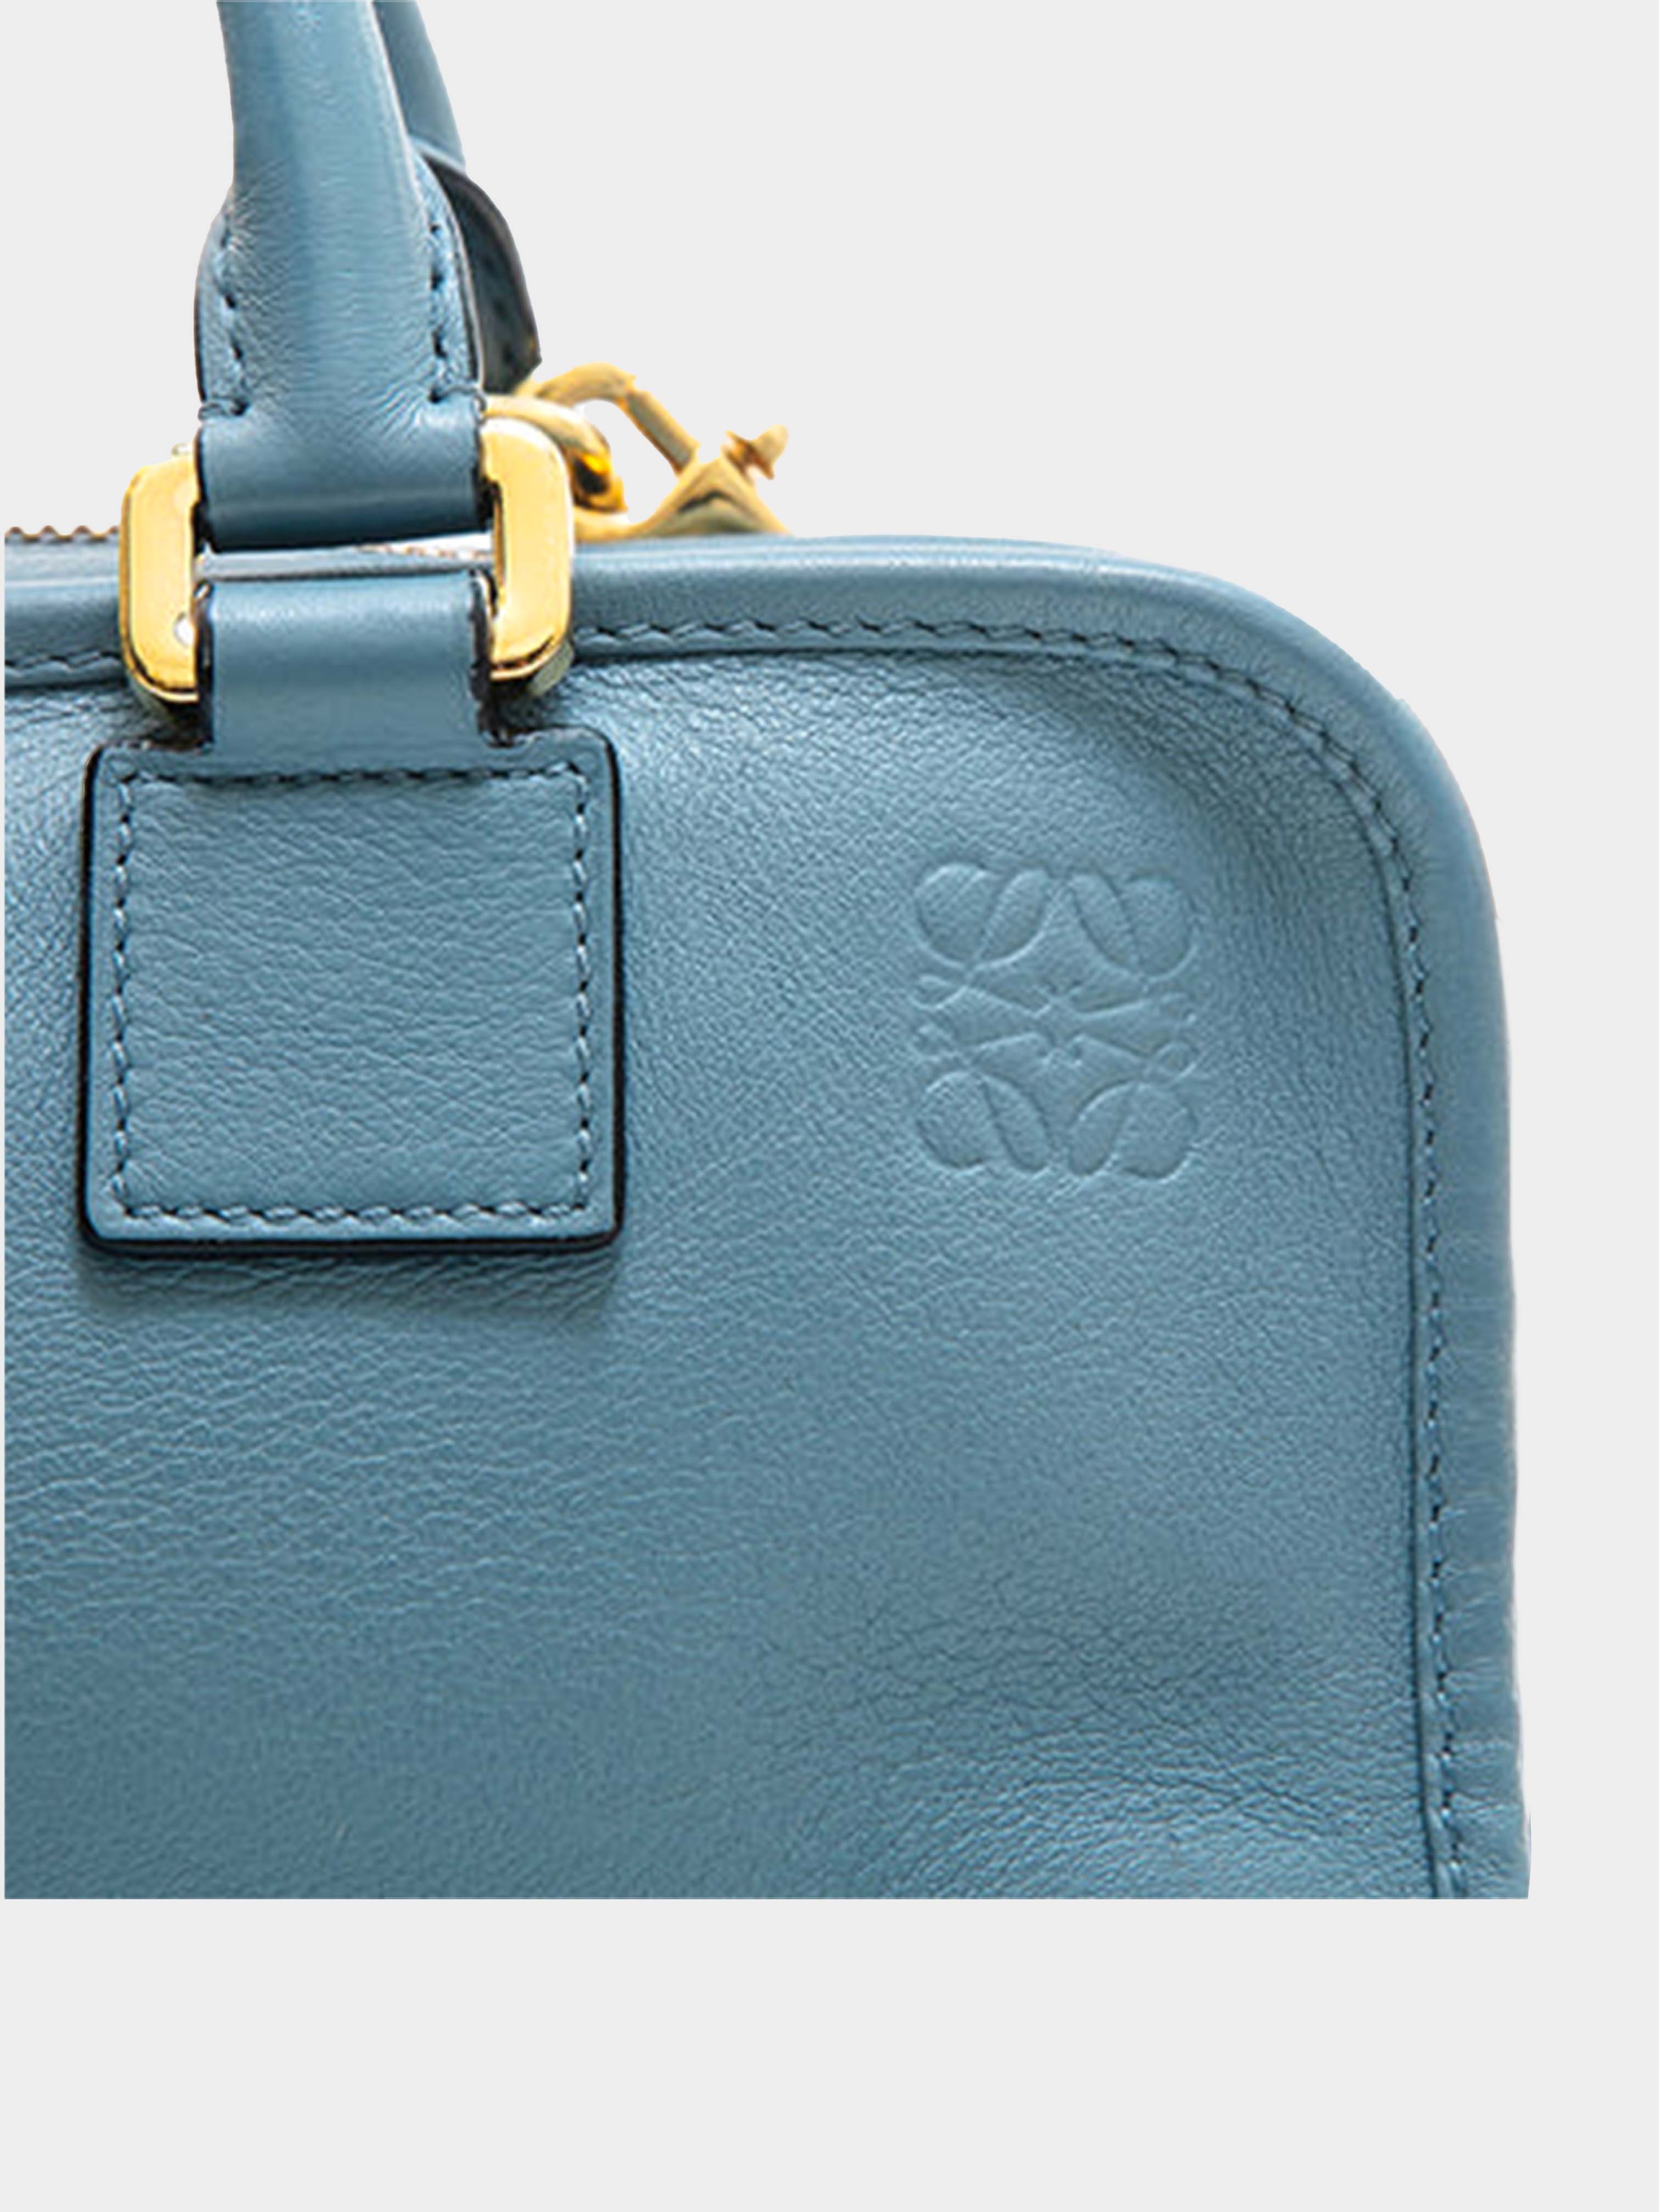 Loewe 1993 Amazon 28 Two-Way Blue Handbag